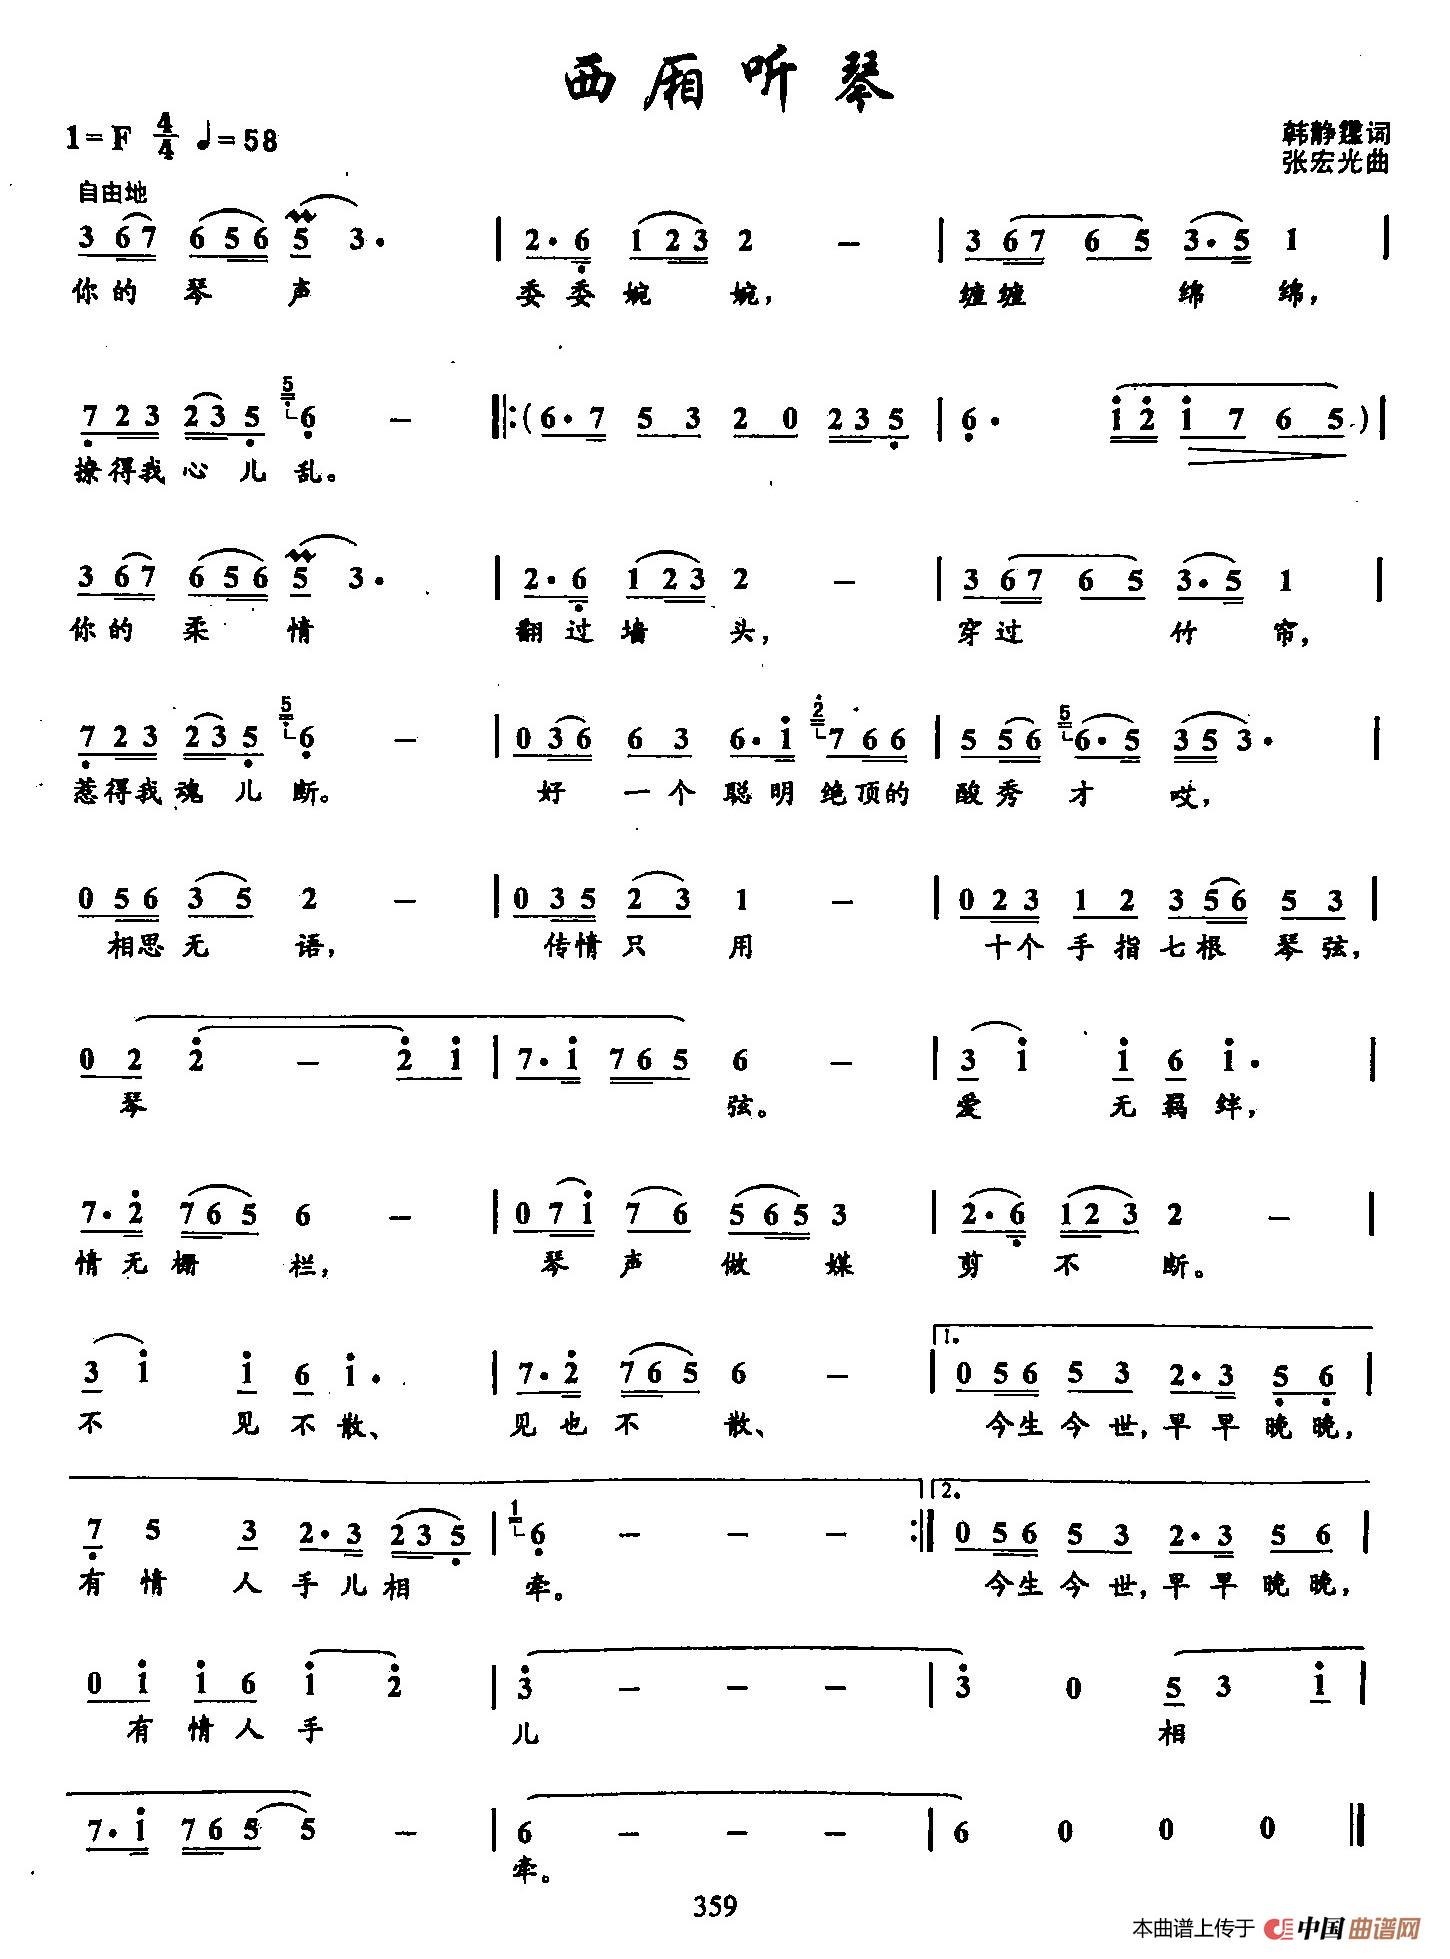 54西厢听琴（双谱）(1)_54西厢听琴（简谱）.jpg